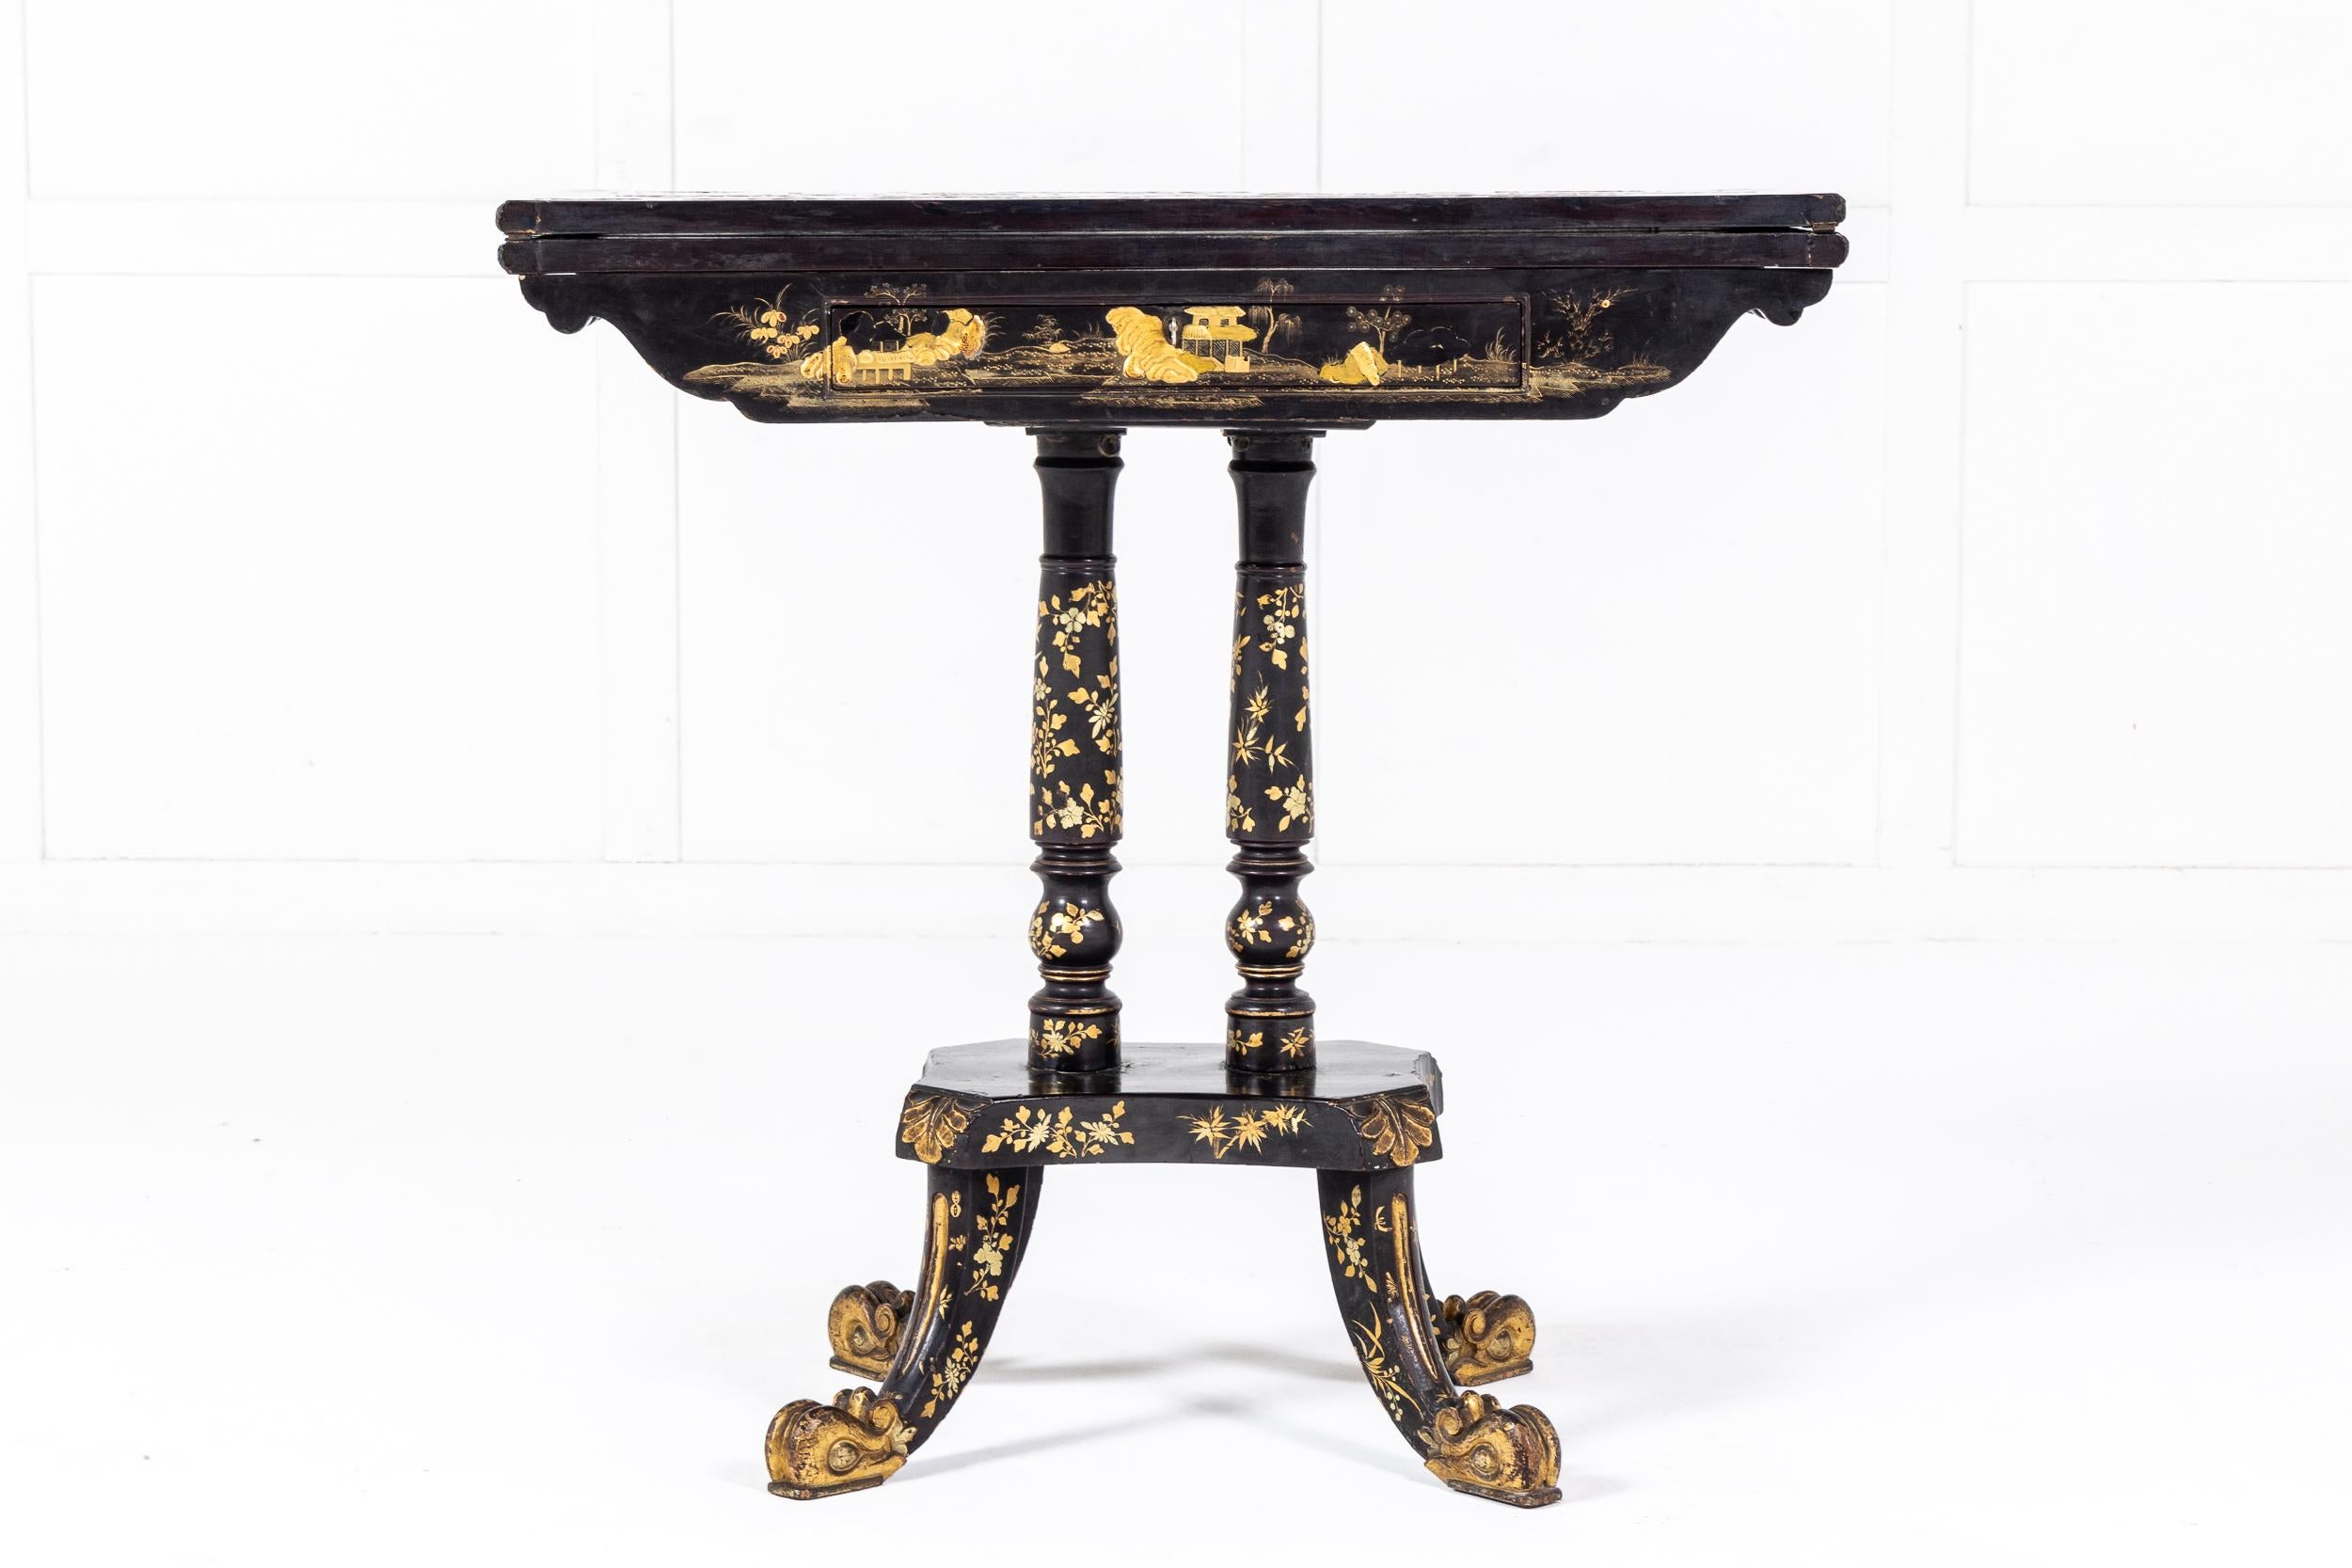 Magnifique table de jeu décorative en laque d'exportation chinoise, c.I.C., vers 1825. Probablement basé sur un modèle Regency anglais et fabriqué pour le marché britannique.

Cette belle table utilise l'habituel plateau rabattable mais repose sur